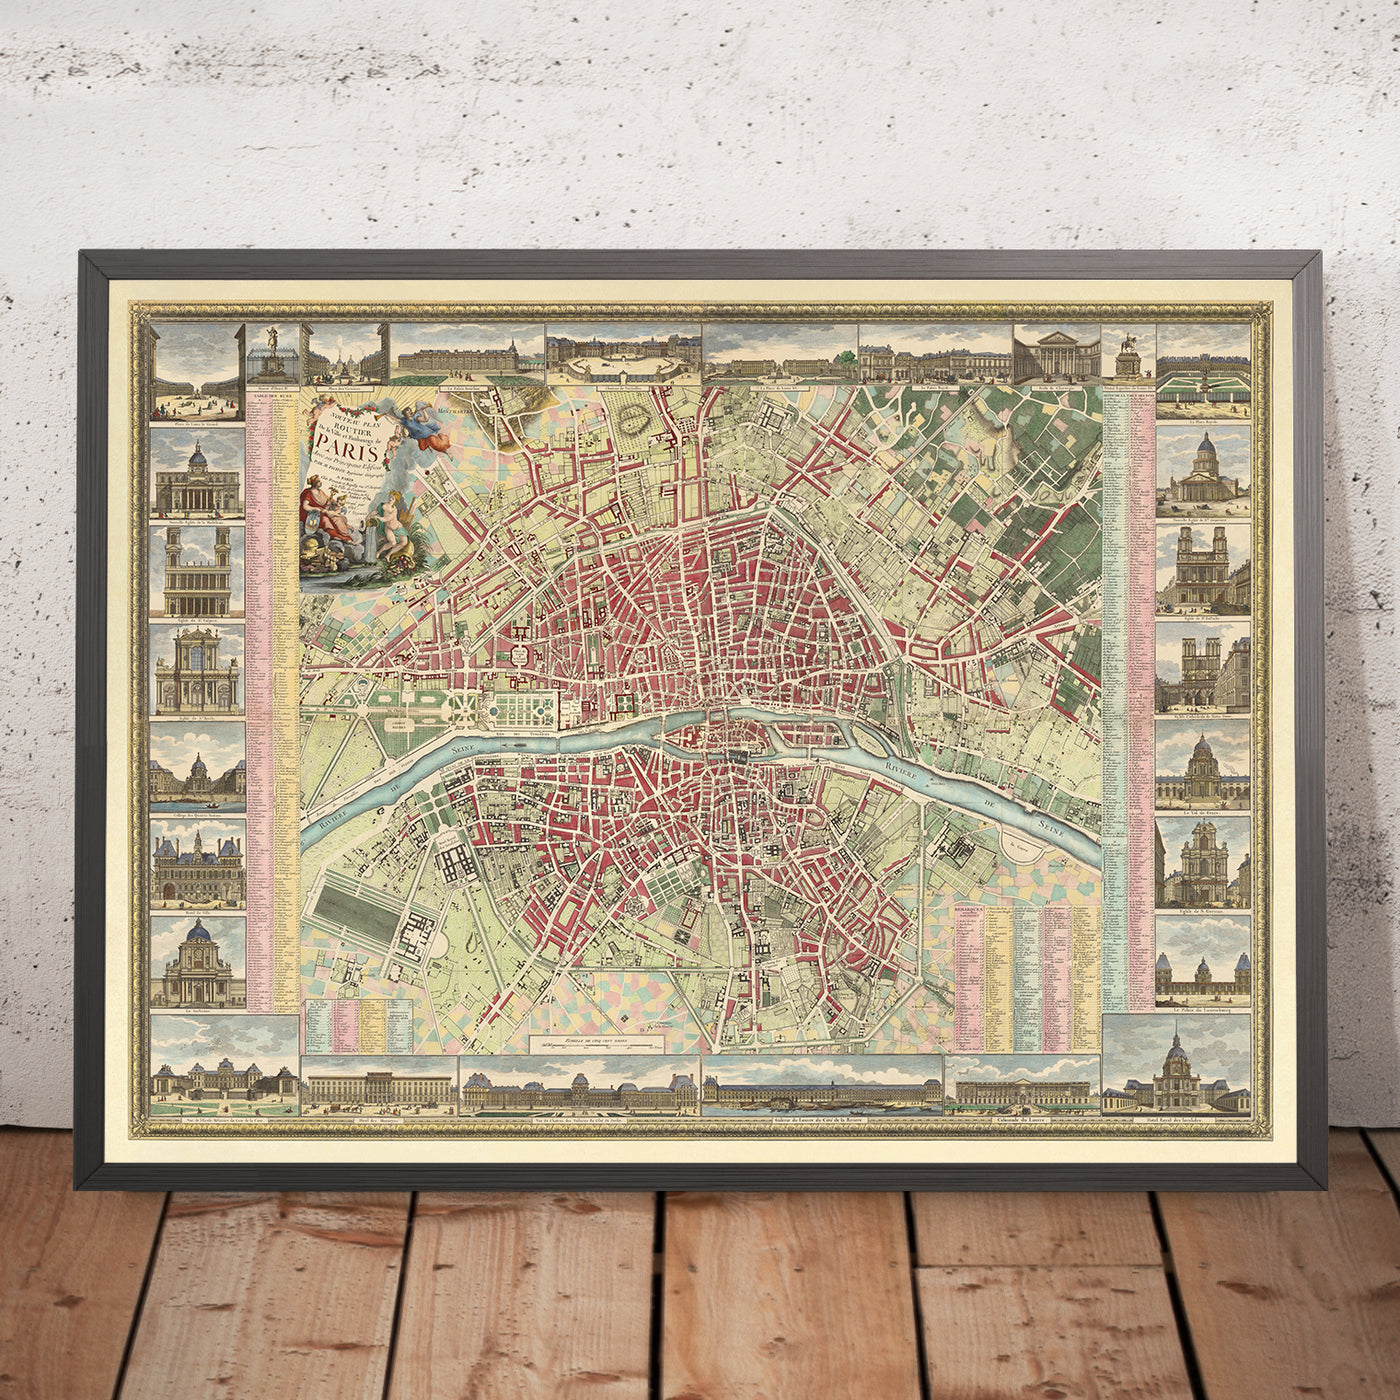 Large Map of Paris by Esnauts & Rapilly, 1784: Louvre, Notre Dame, Champs-Elysees, Bois de Boulogne, Pont Neuf